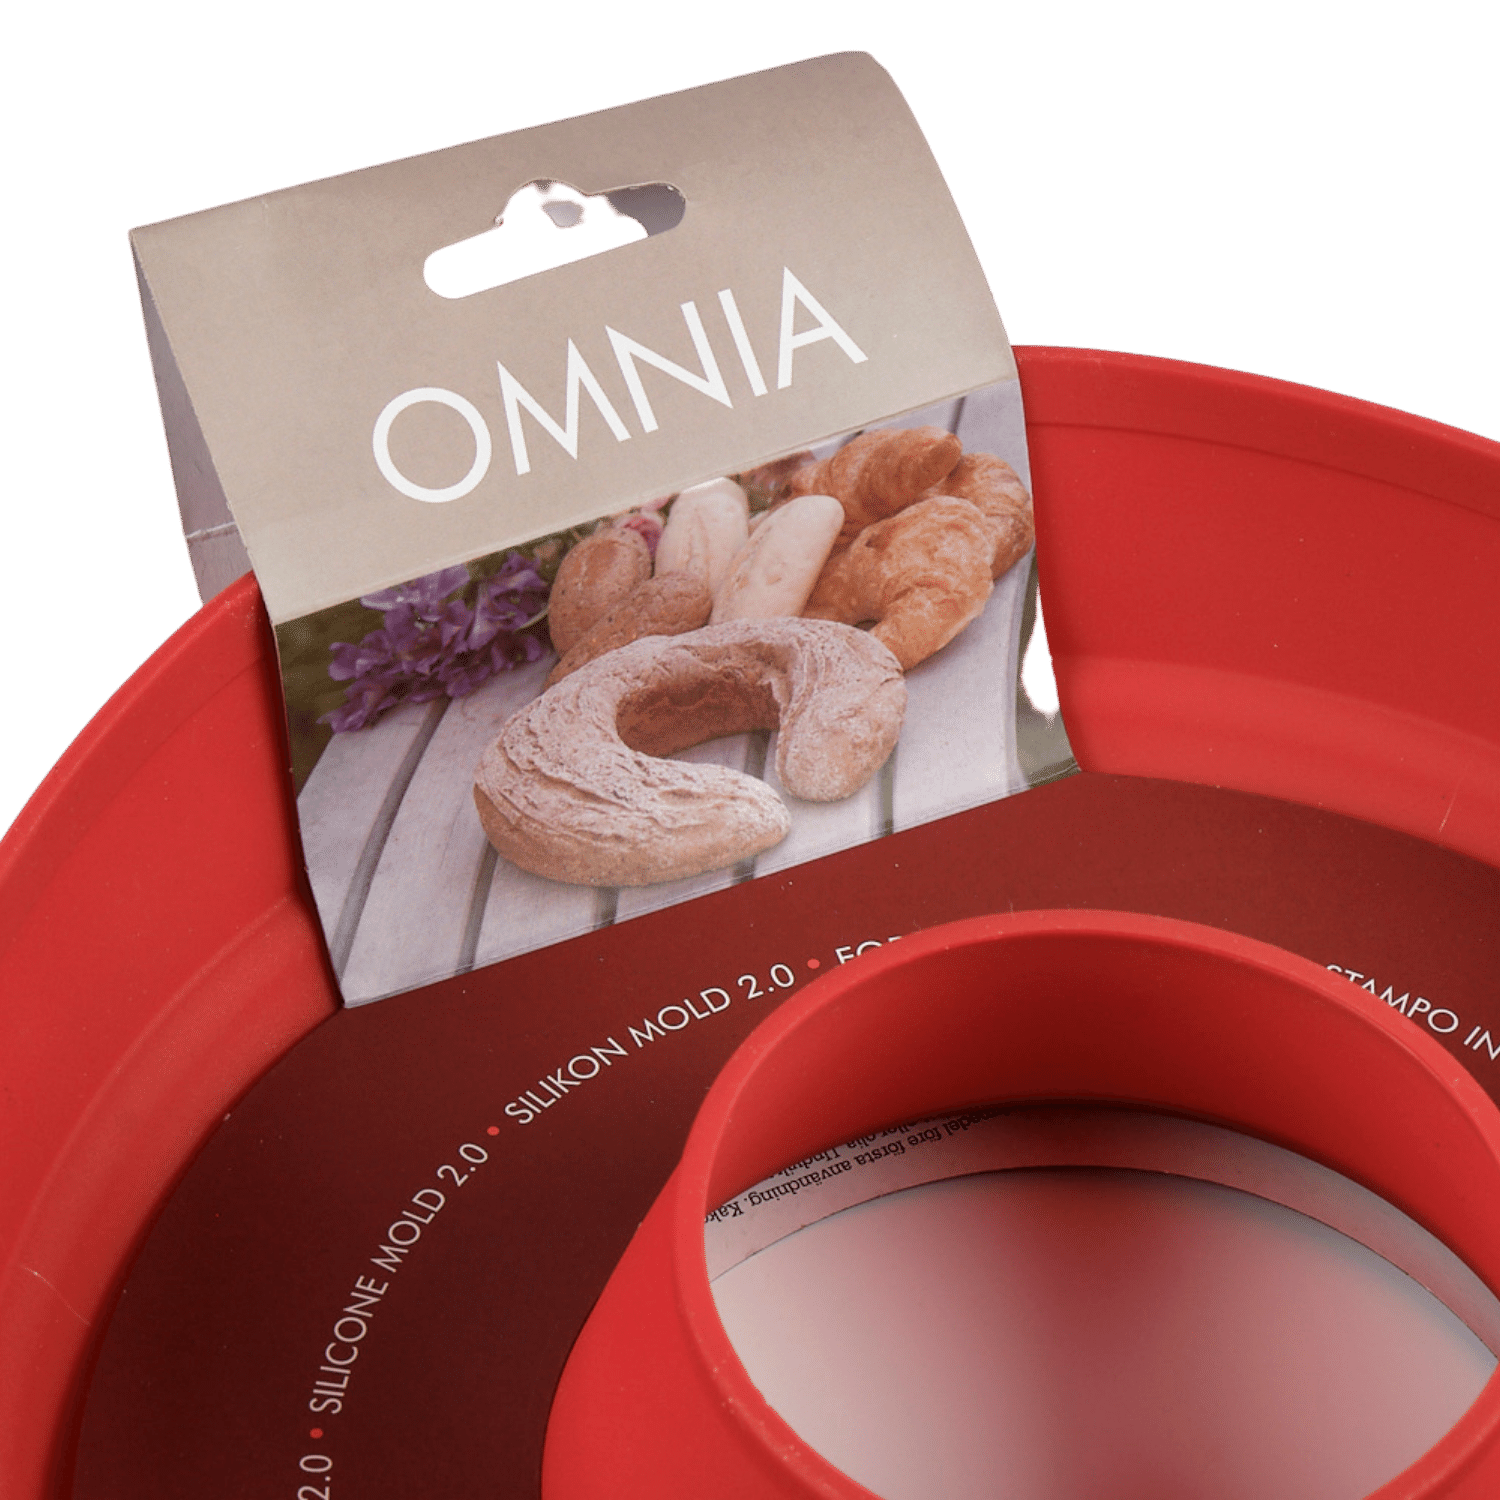 Omnia Oven UK  The Best Campervan Oven – Brown Bird & Co